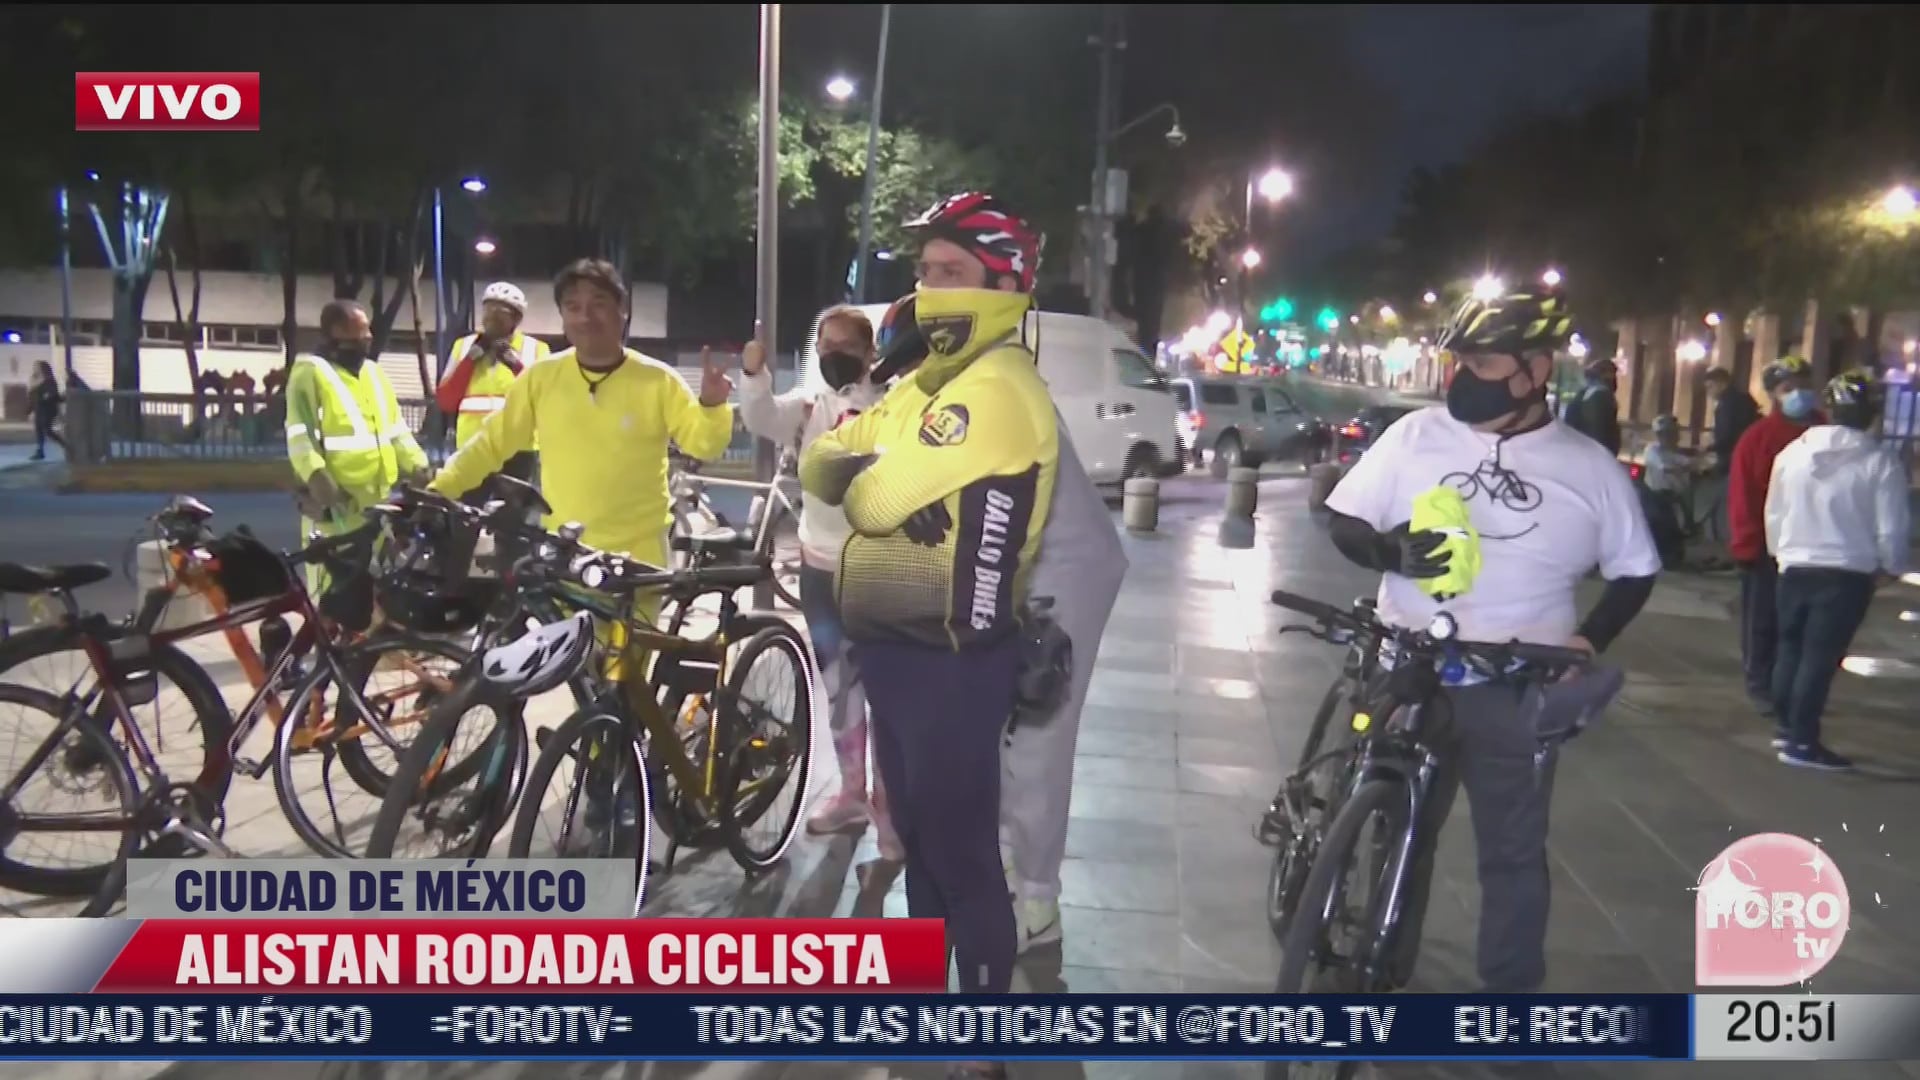 ciclistas alistan rodada en plaza tlaxcoaque